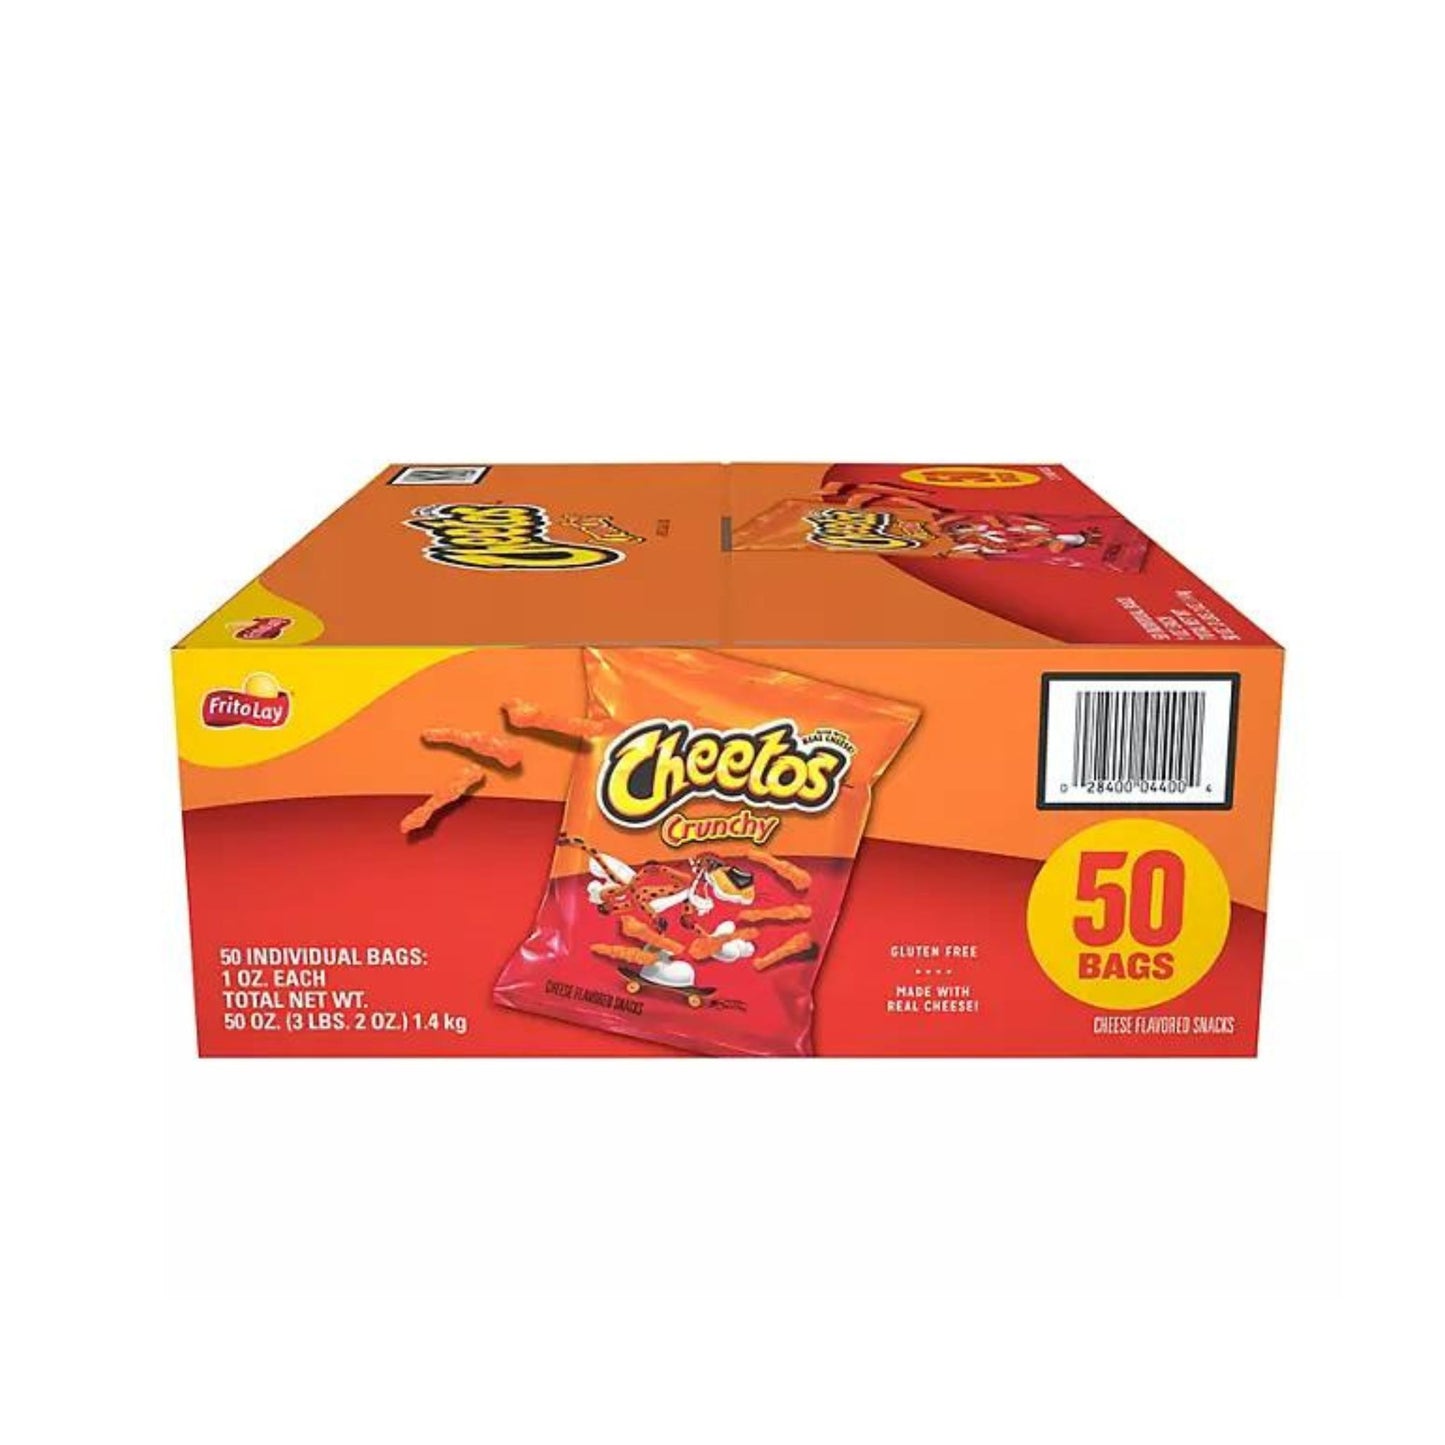 Cheetos Crunchy 1oz. 50bags per Pack